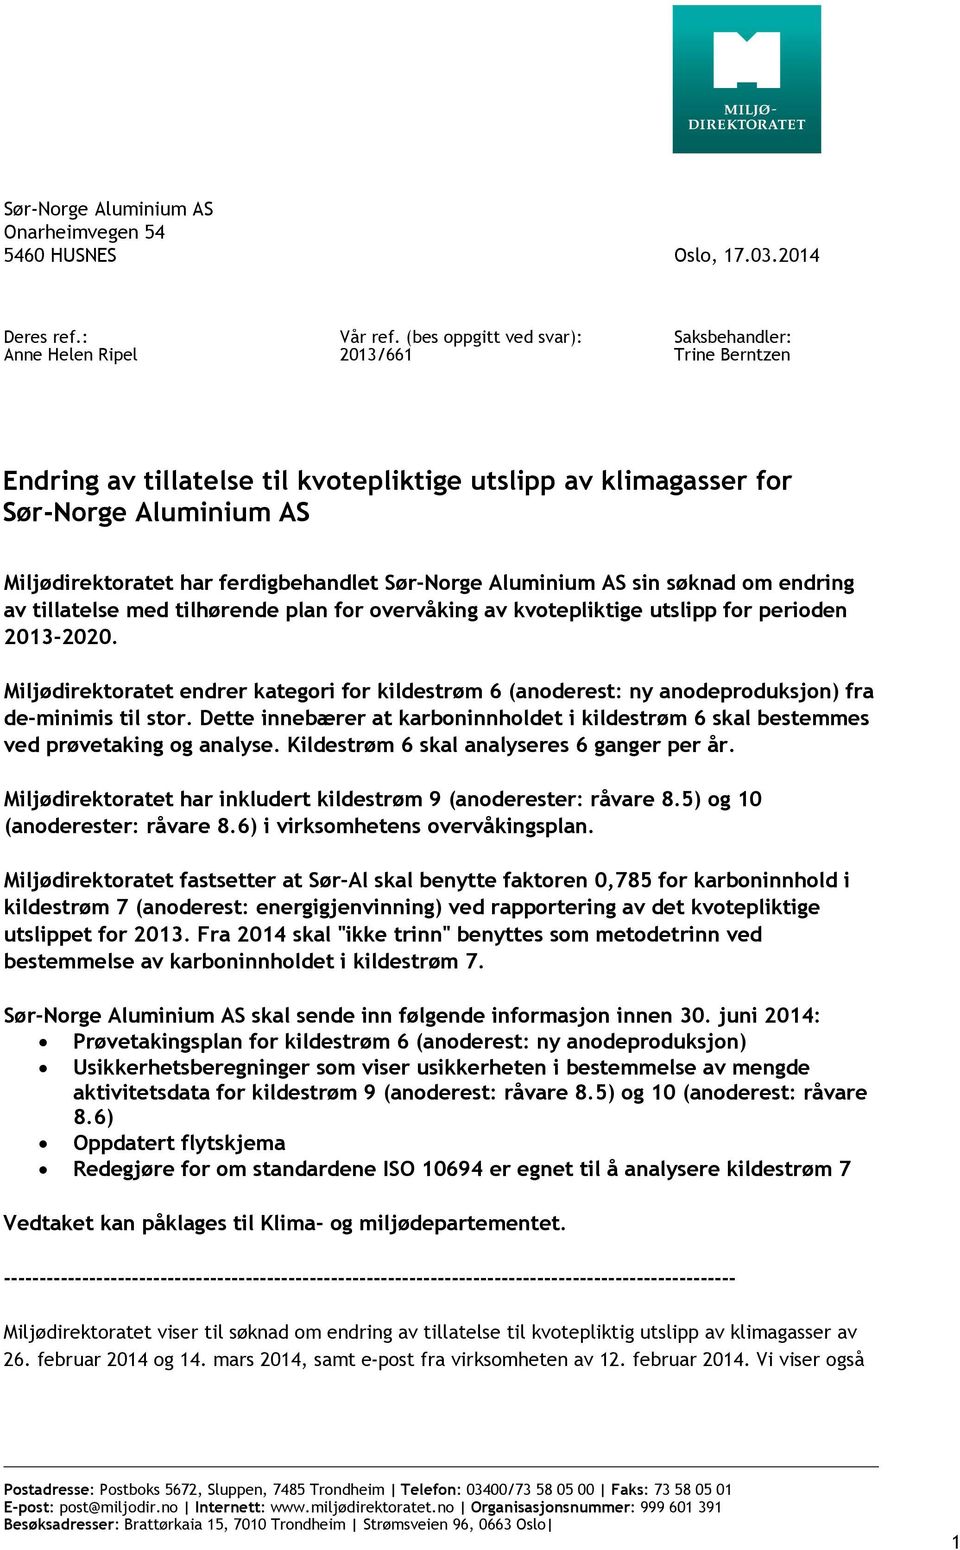 Sør-Norge Aluminium AS sin søknad om endring av tillatelse med tilhørende plan for overvåking av kvotepliktige utslipp for perioden 2013-2020.